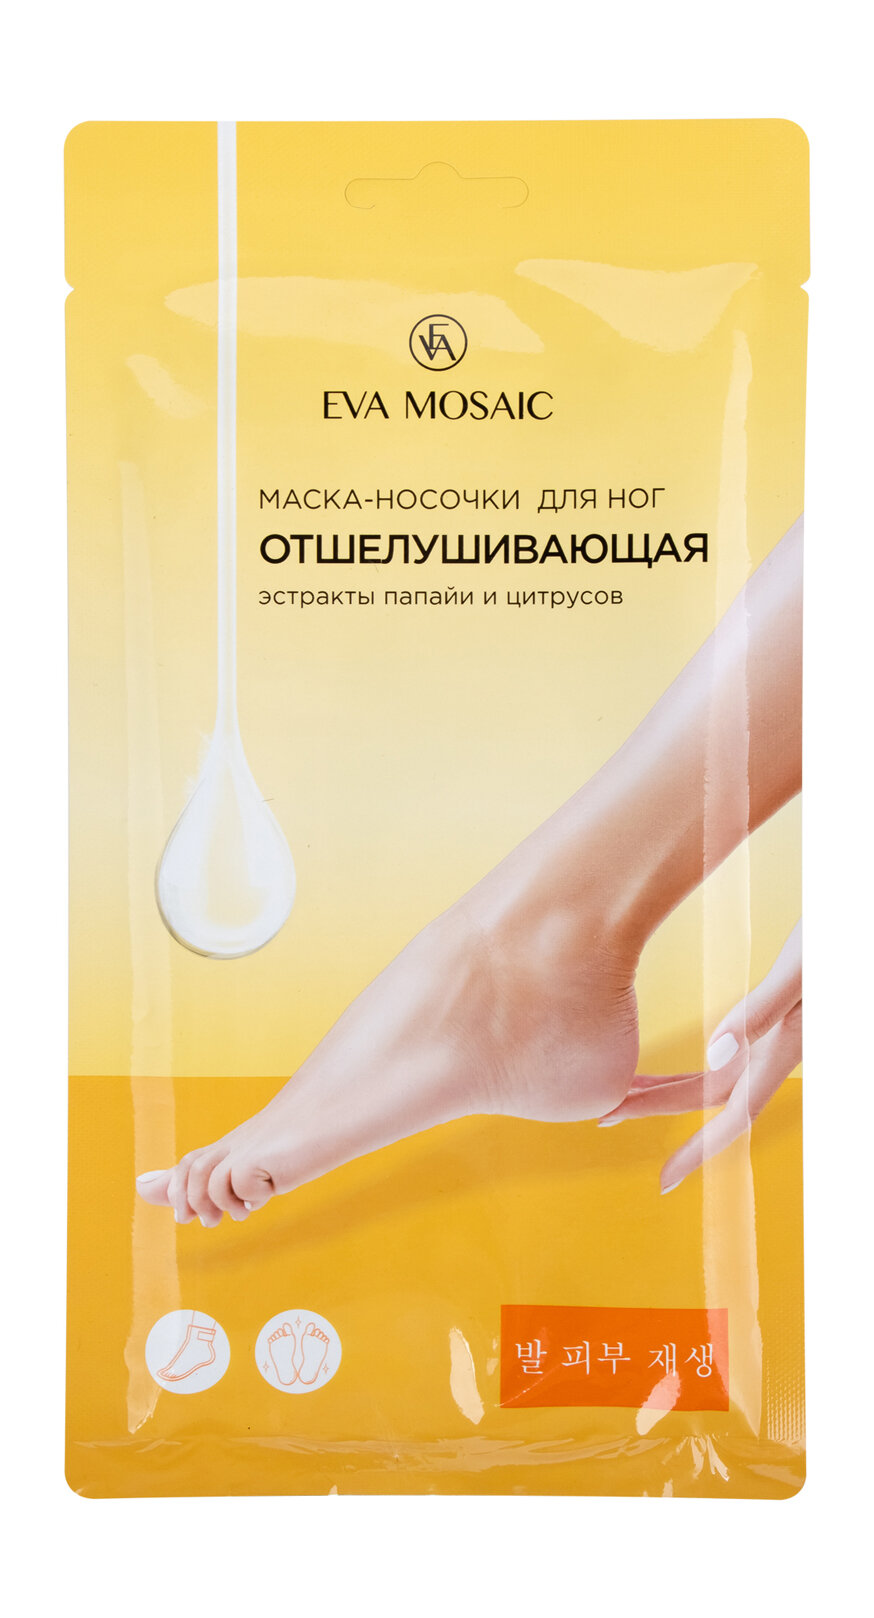 Отшелушивающая маска-носочки для ног с экстрактом папайи и цитрусов Eva Mosaic Маска-носочки для ног